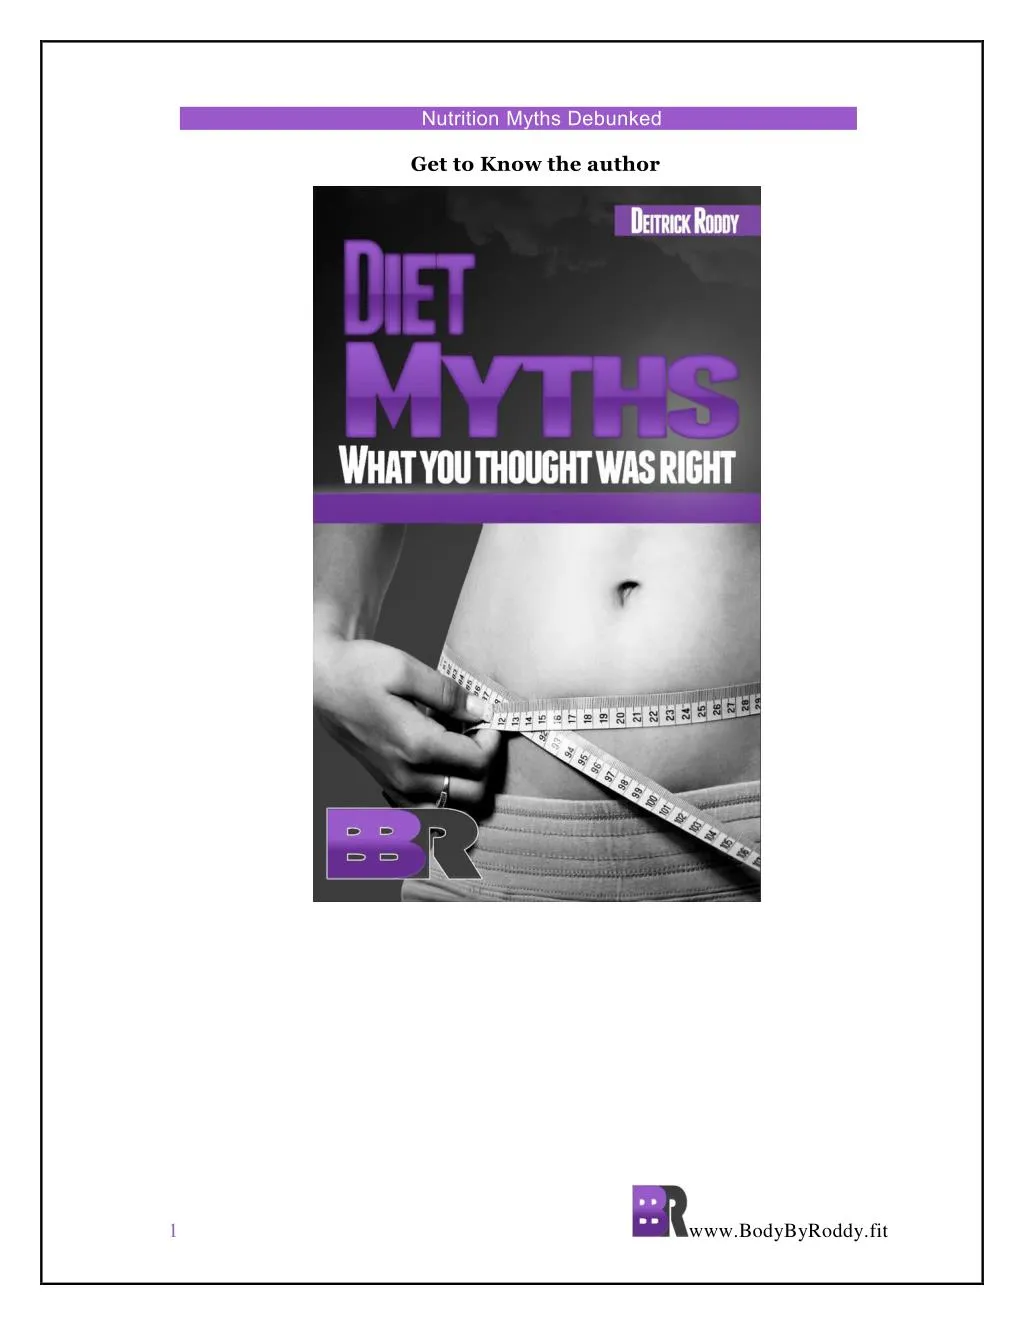 nutrition myths debunked